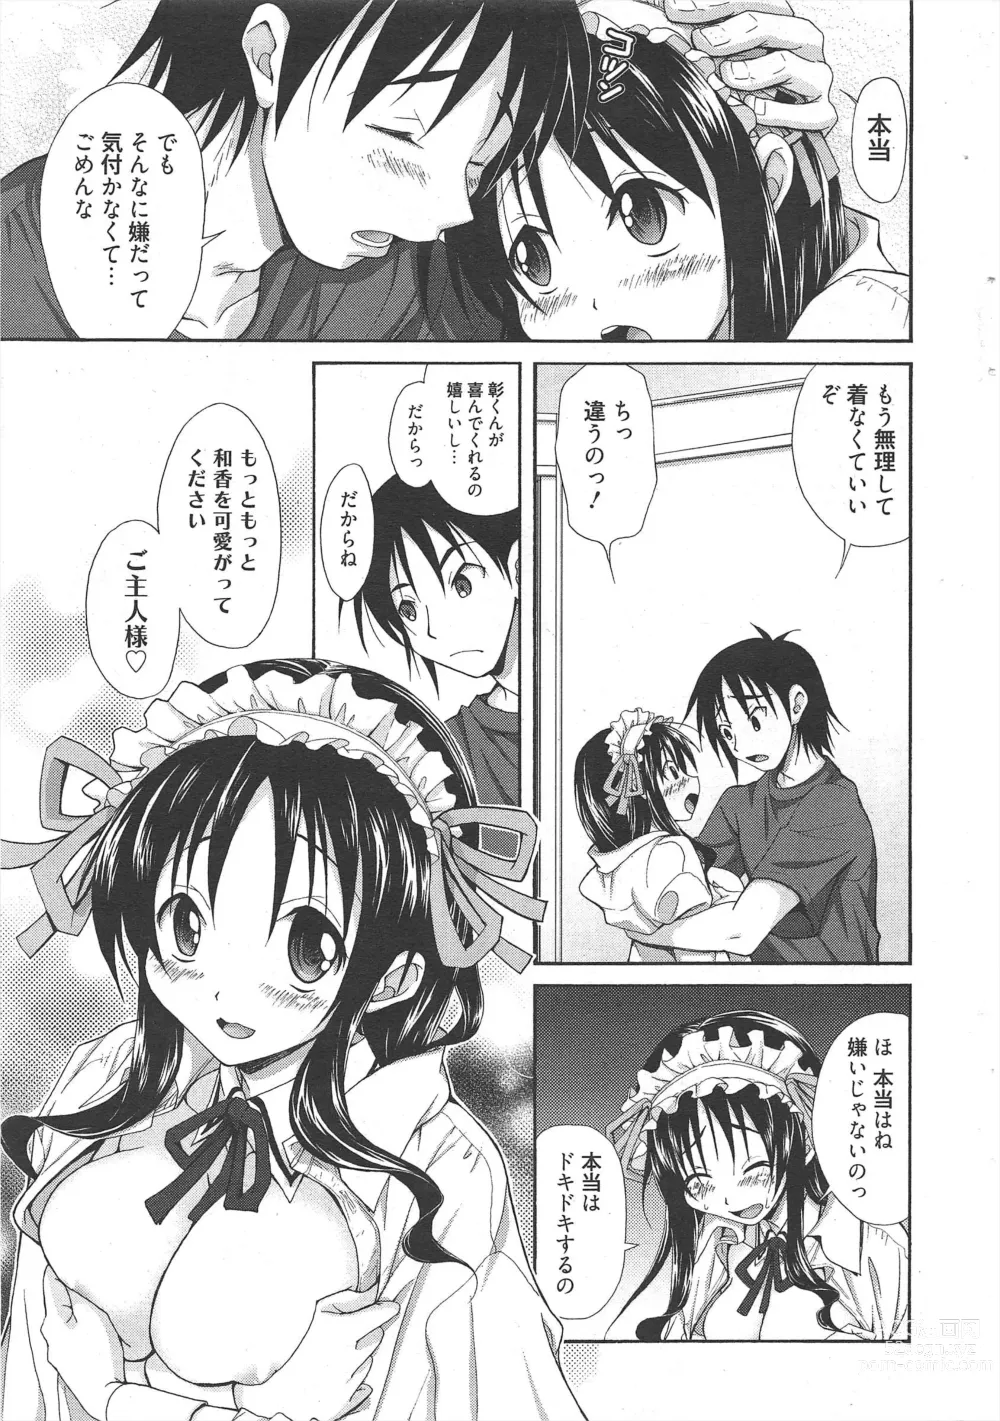 Page 17 of manga Manga Bangaichi 2011-08